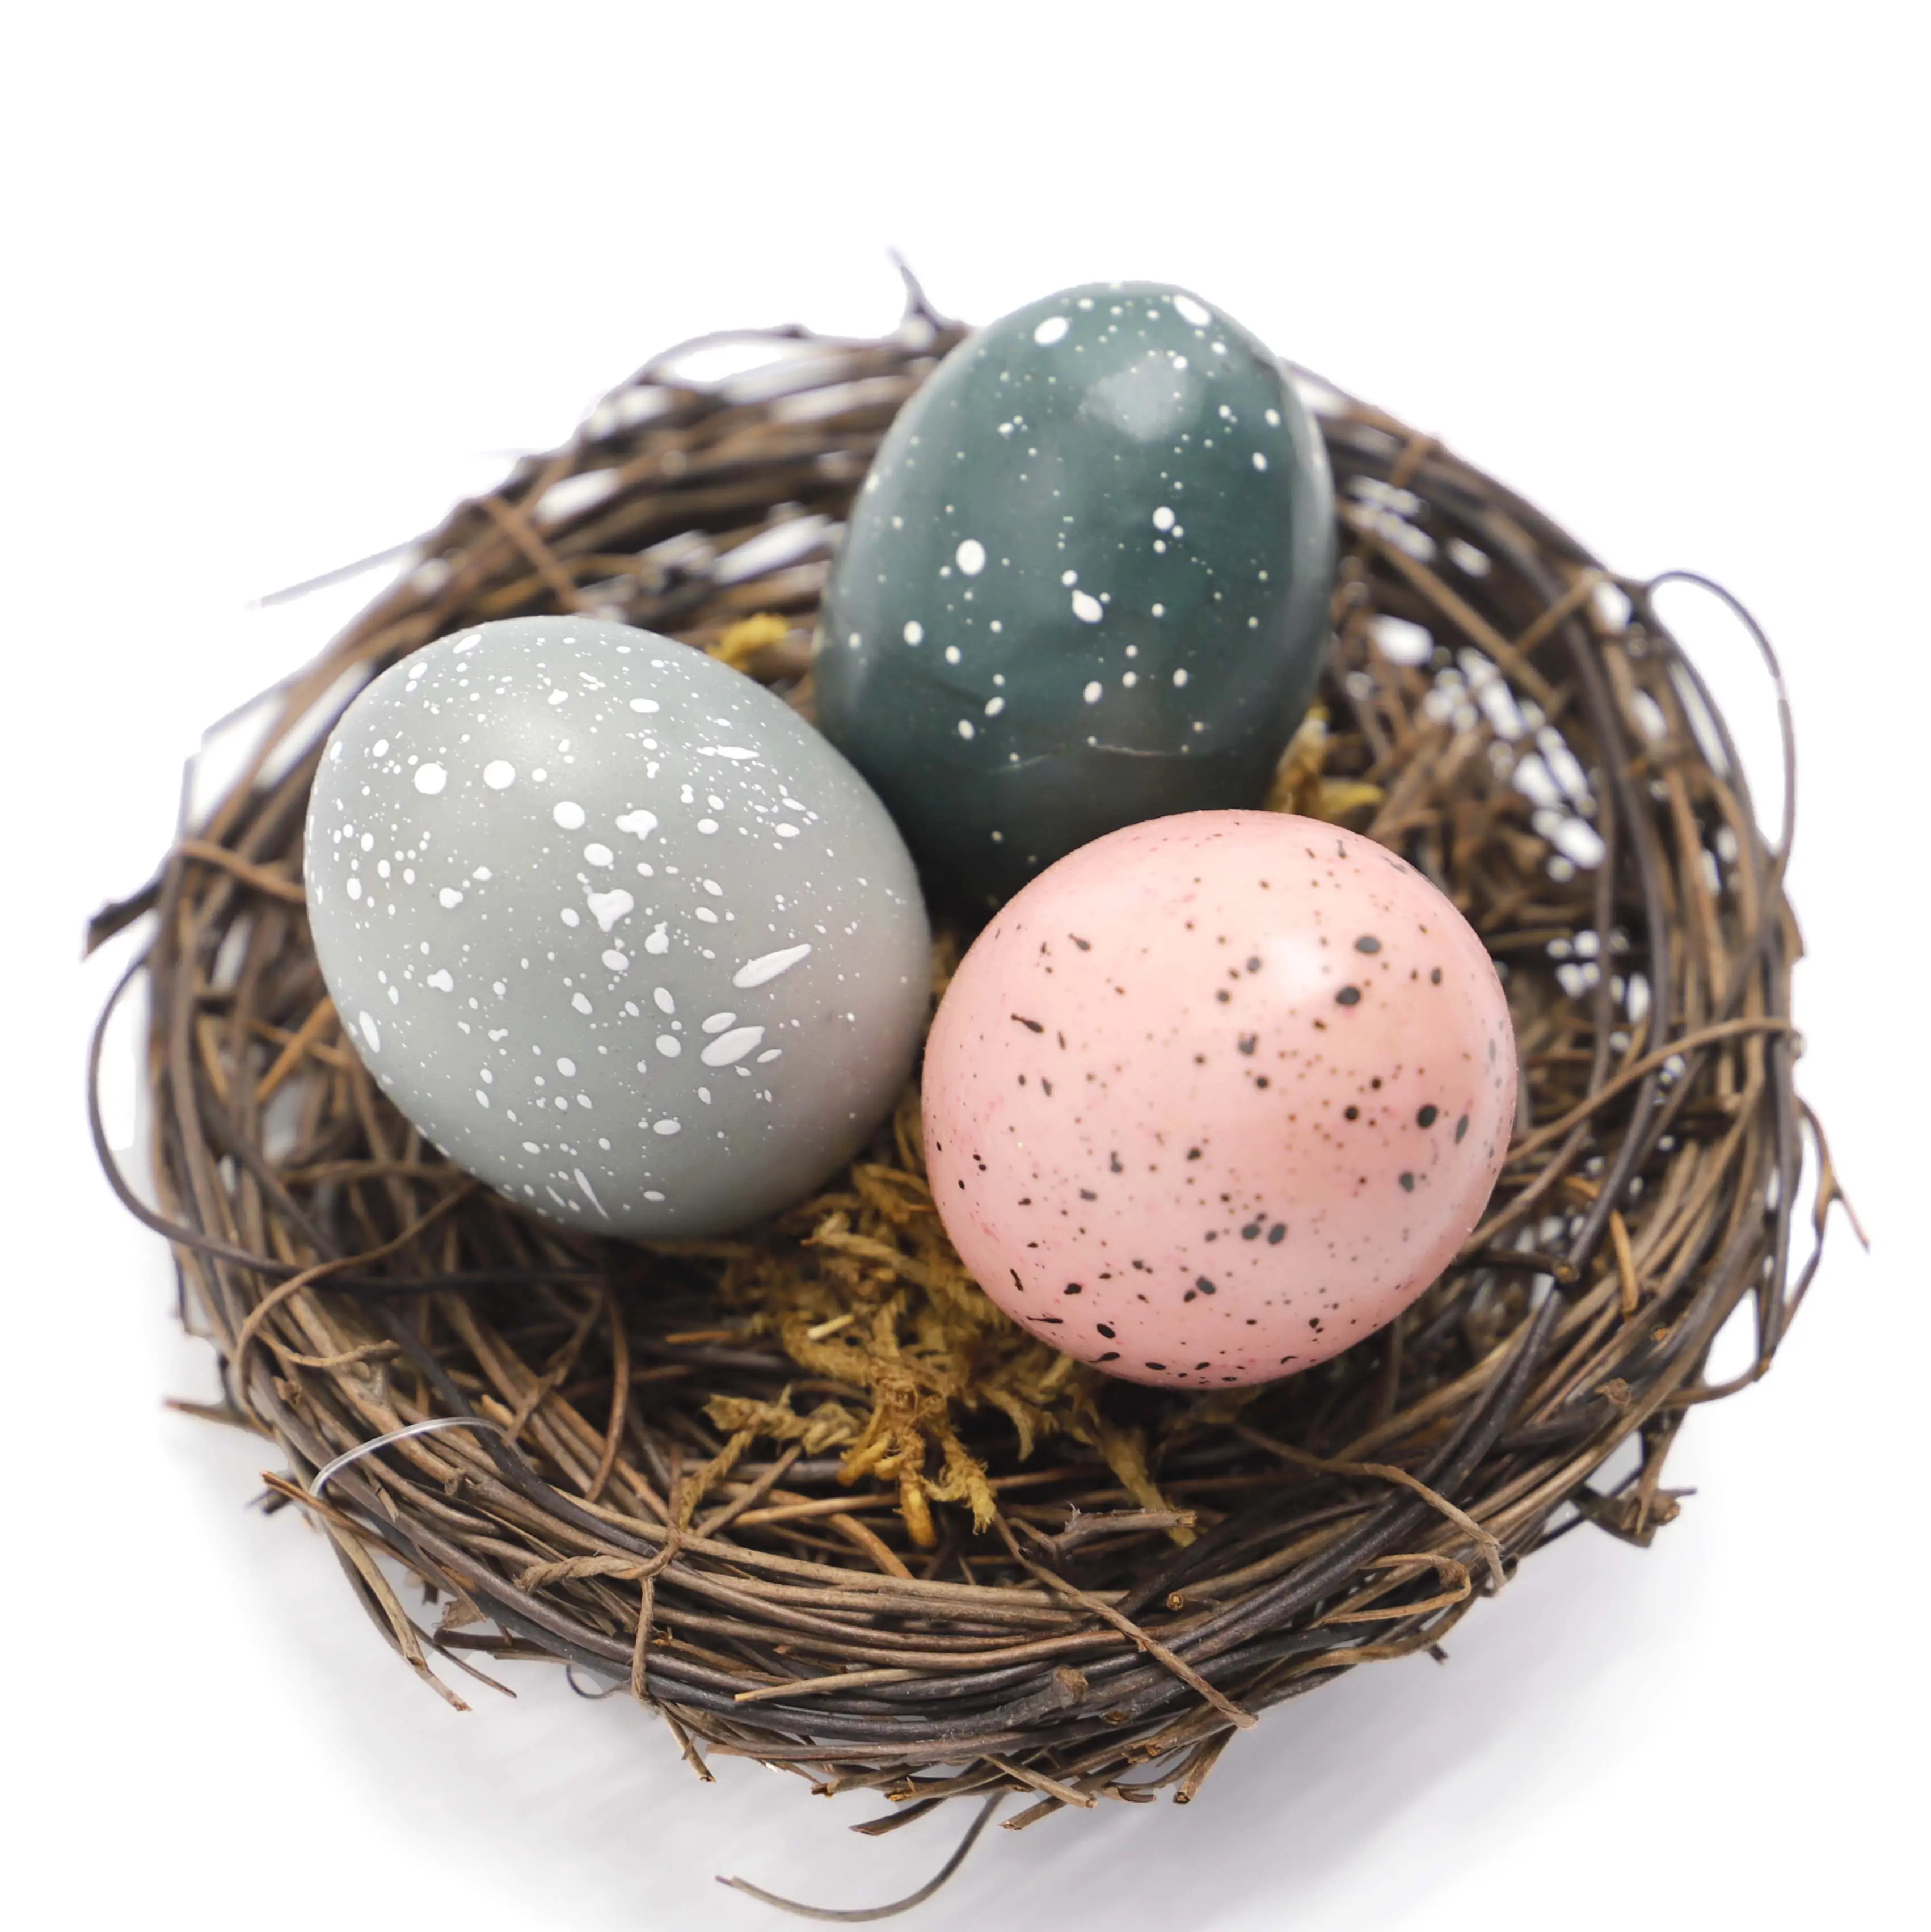 手作りの鳥の巣子供のための卵と人工の巣イースターデコレーションガーデンヤードホームパーティー装飾イースターエッグ